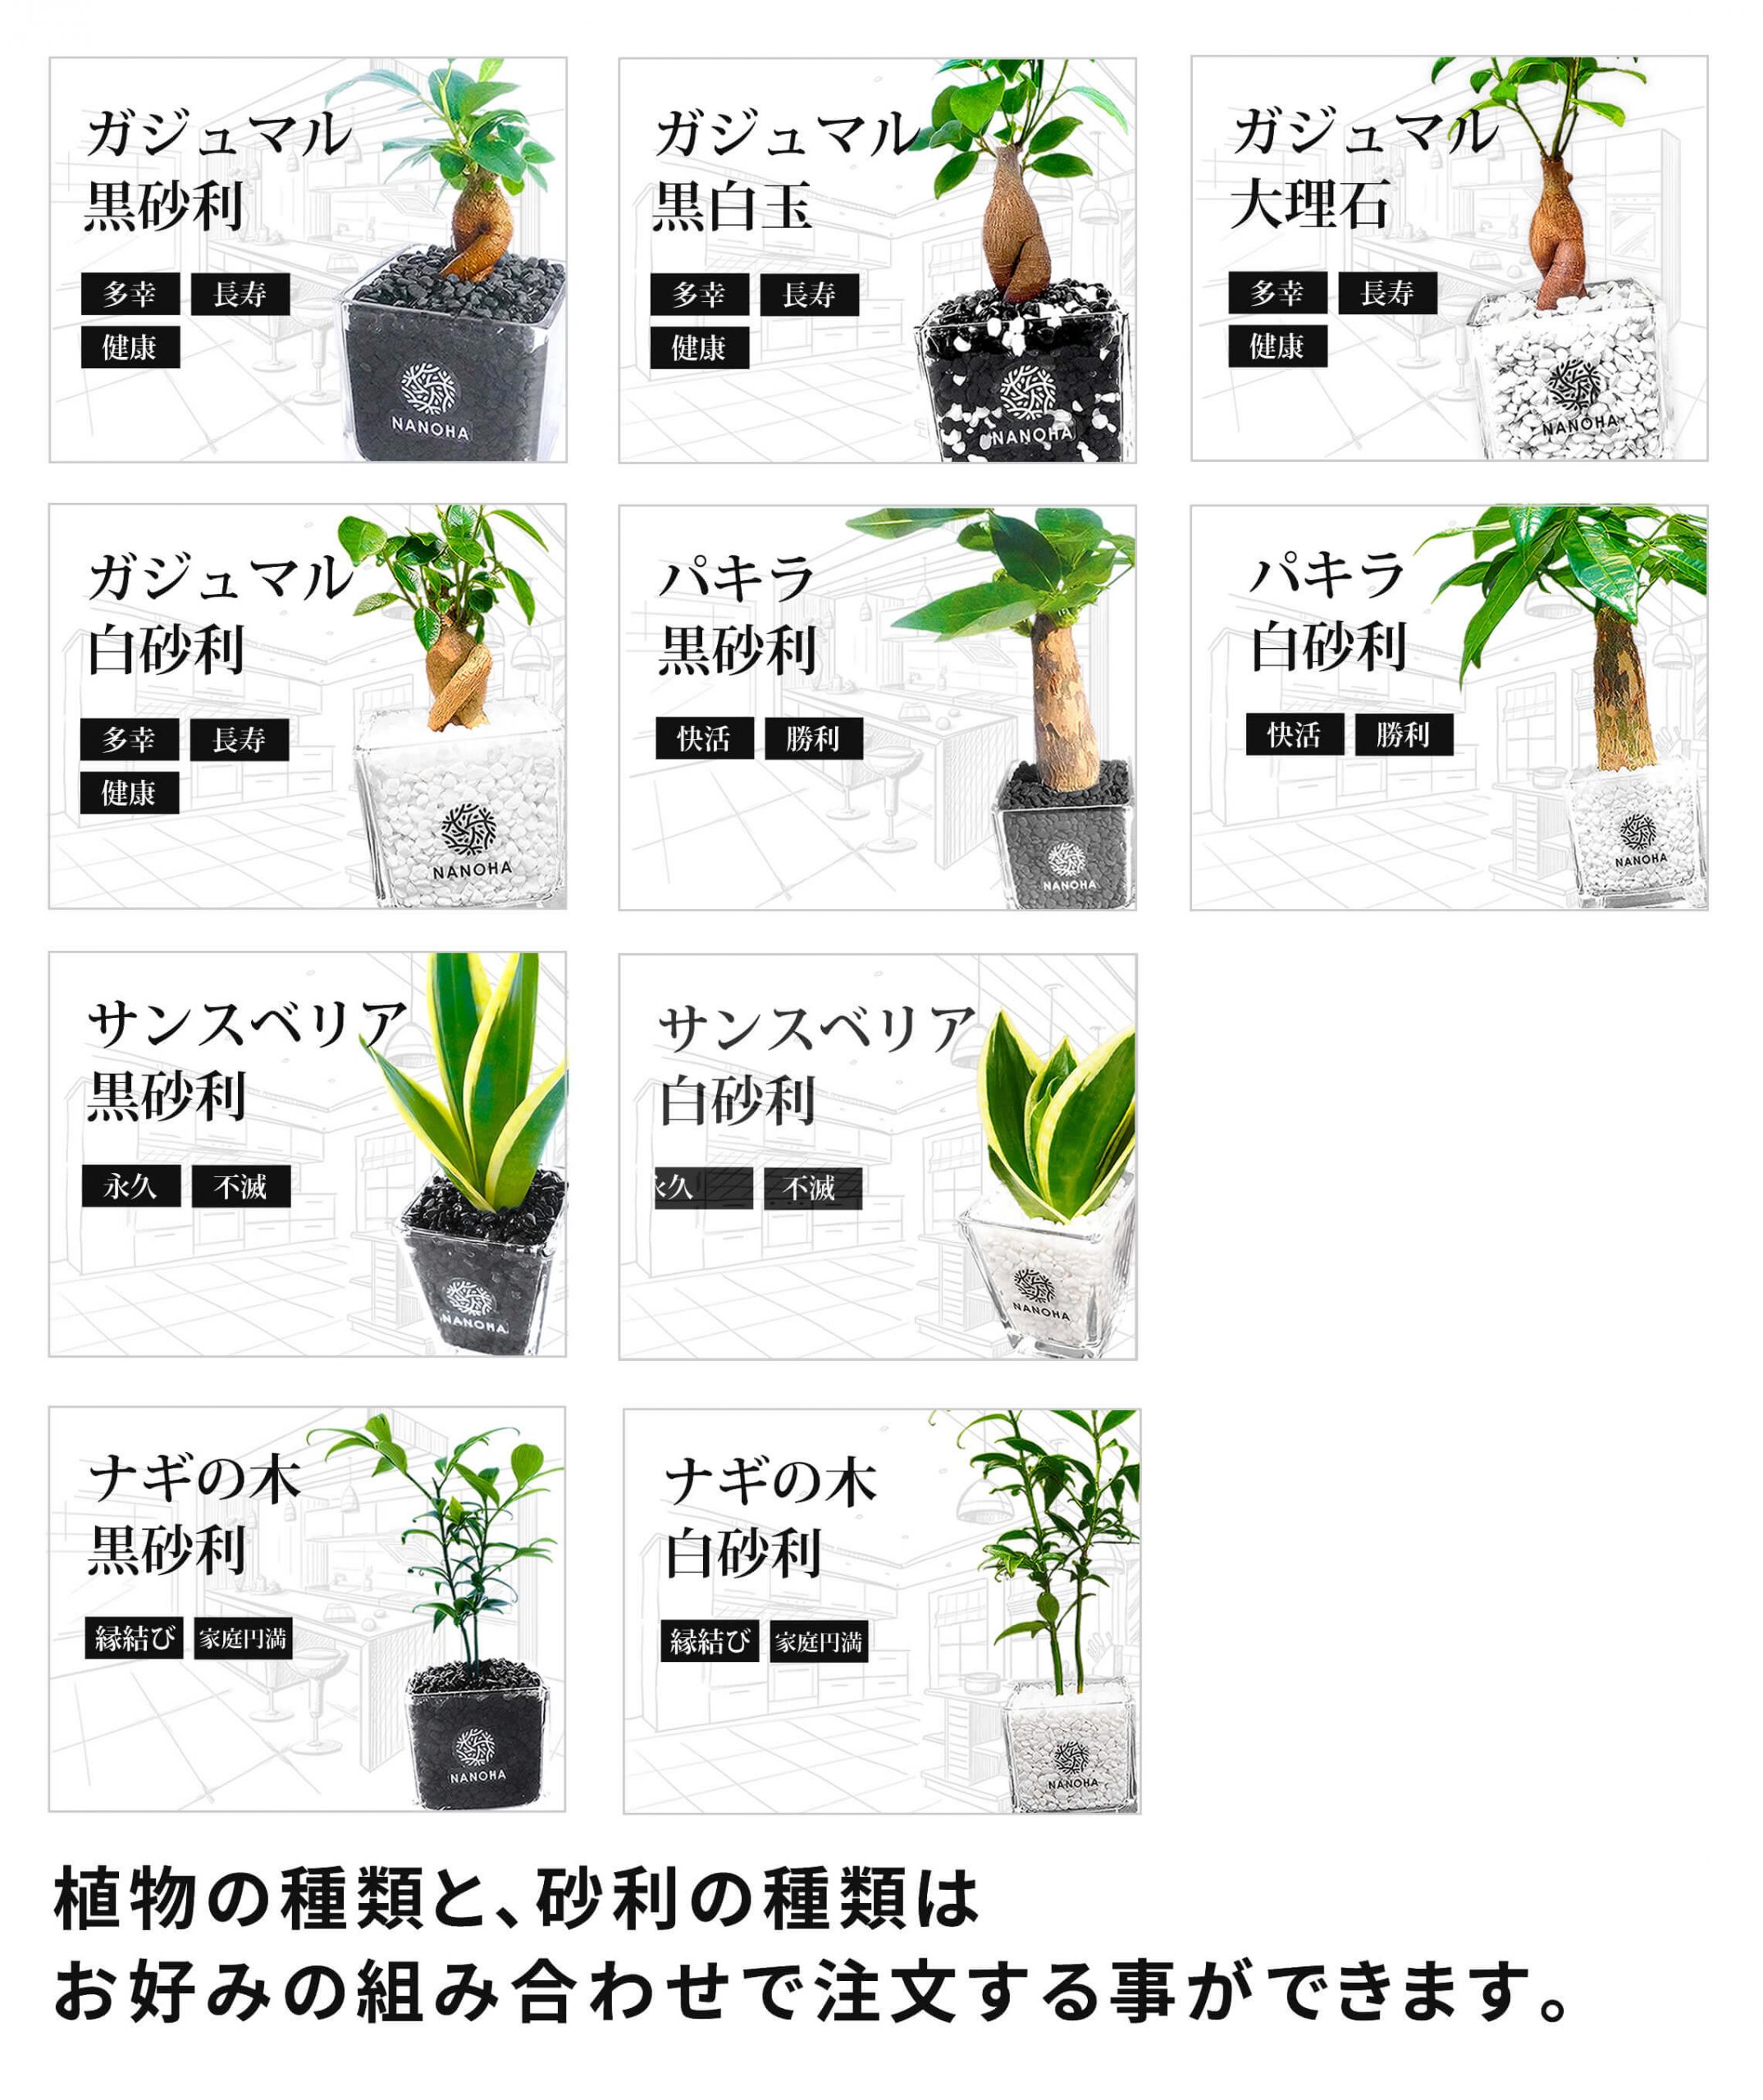 販売している植物の種類について